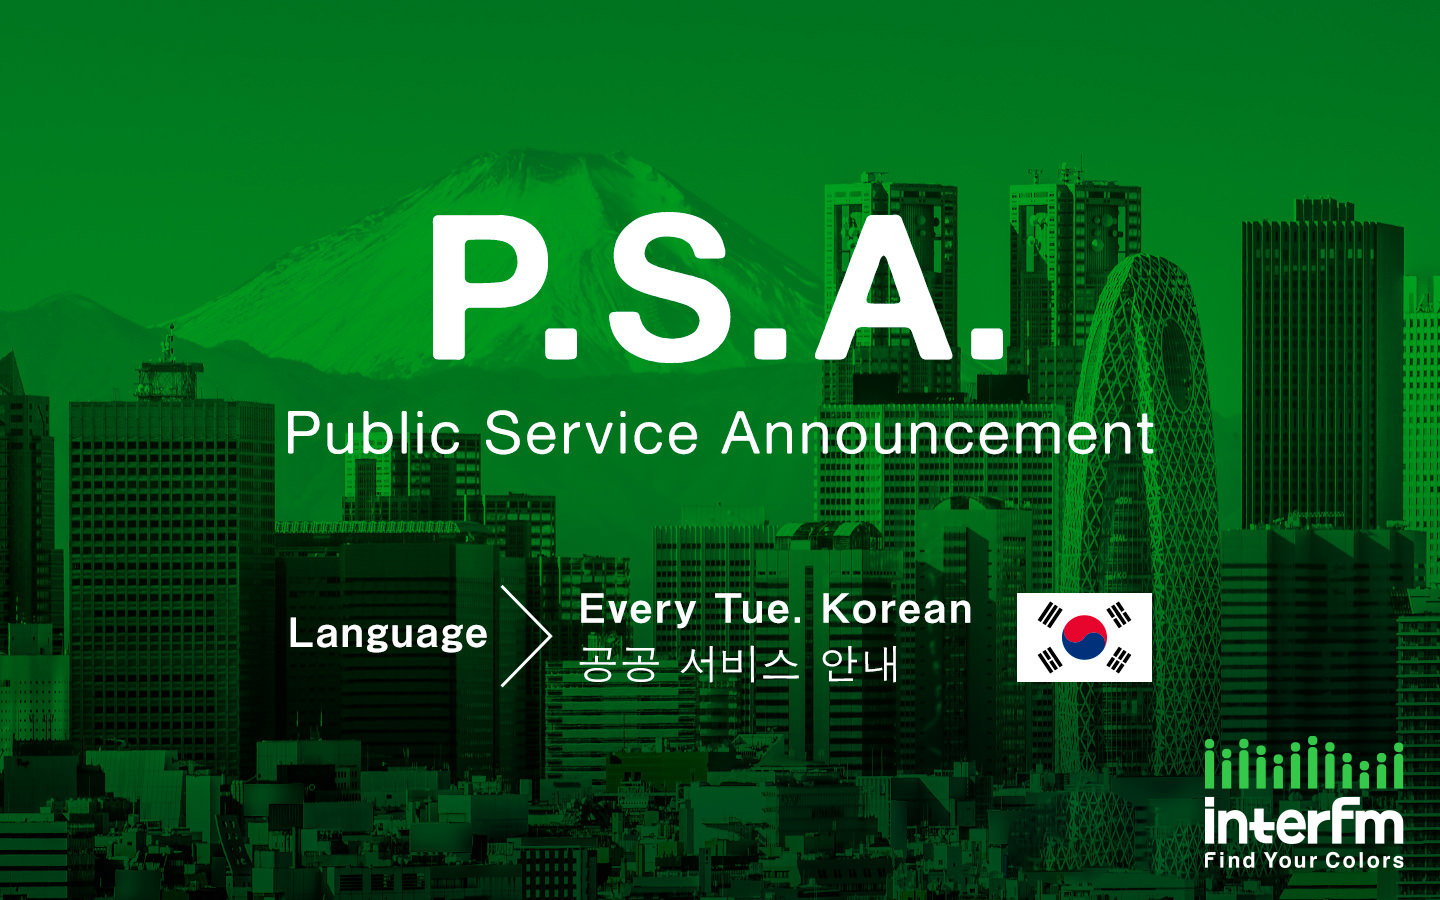 공익 광고 - Public Service Announcement (한국어 - Korean)